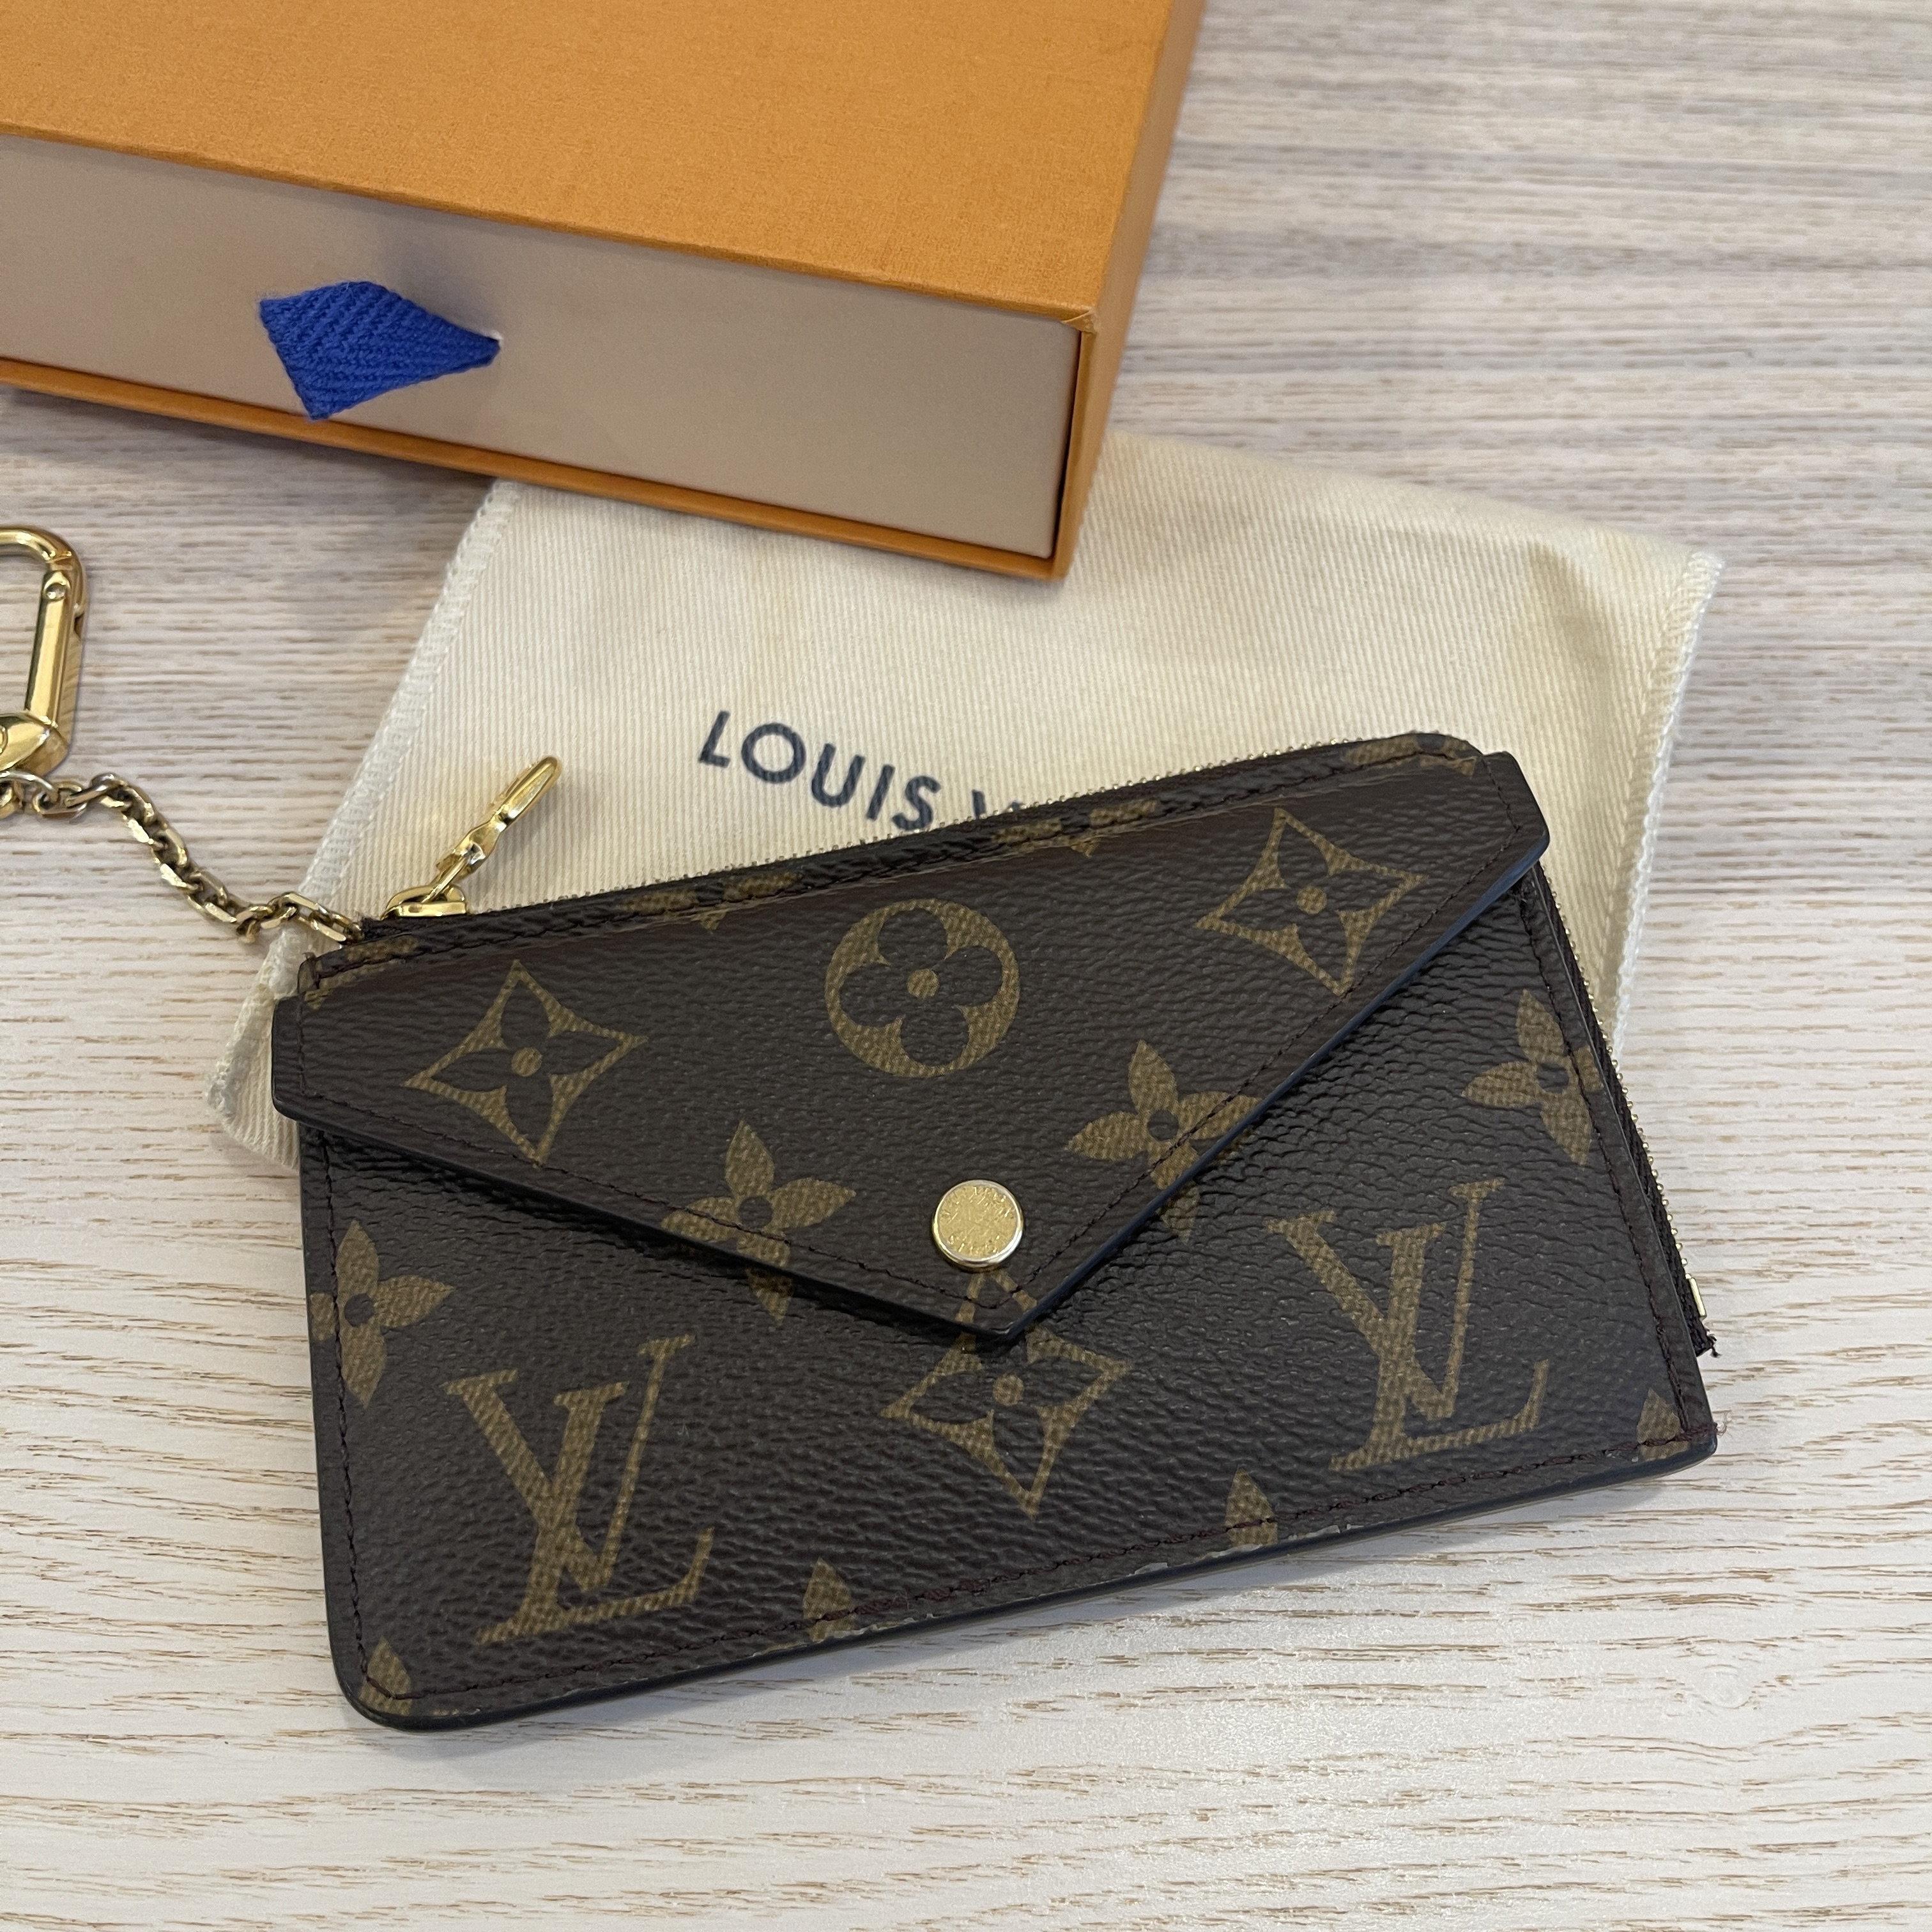 Louis Vuitton Recto Verso Card Holders